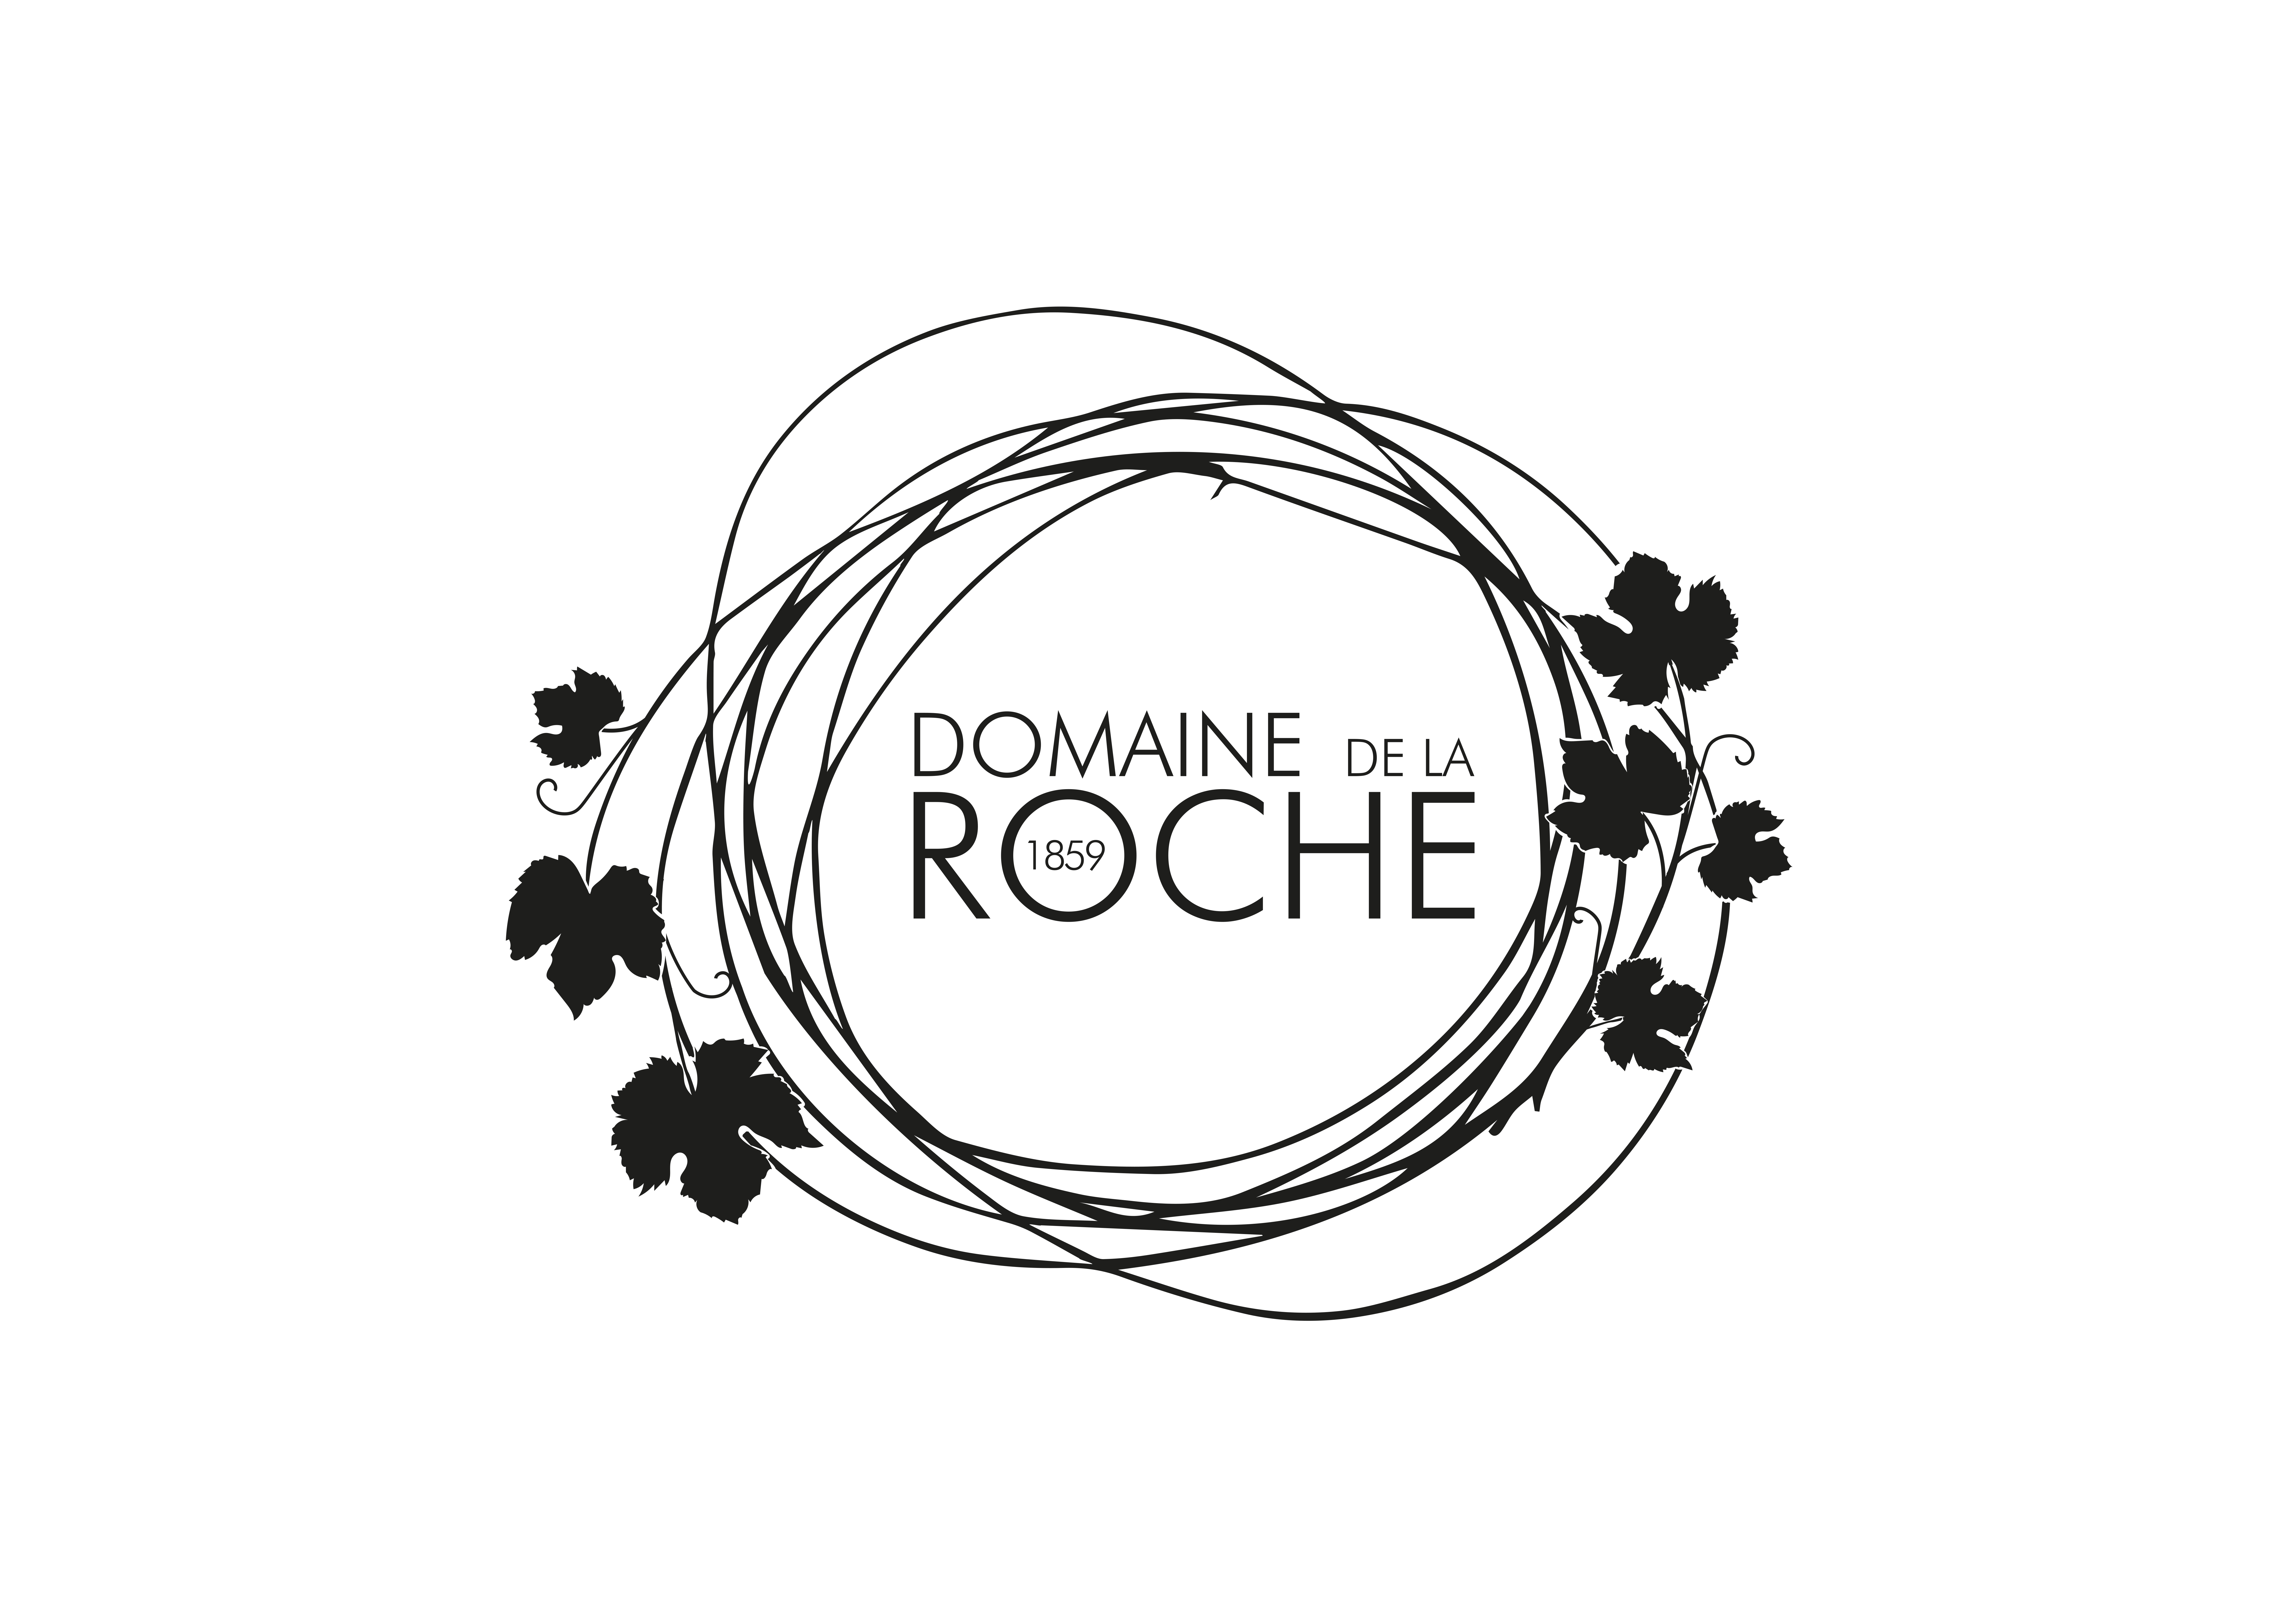 Domaine de la Roche 1859